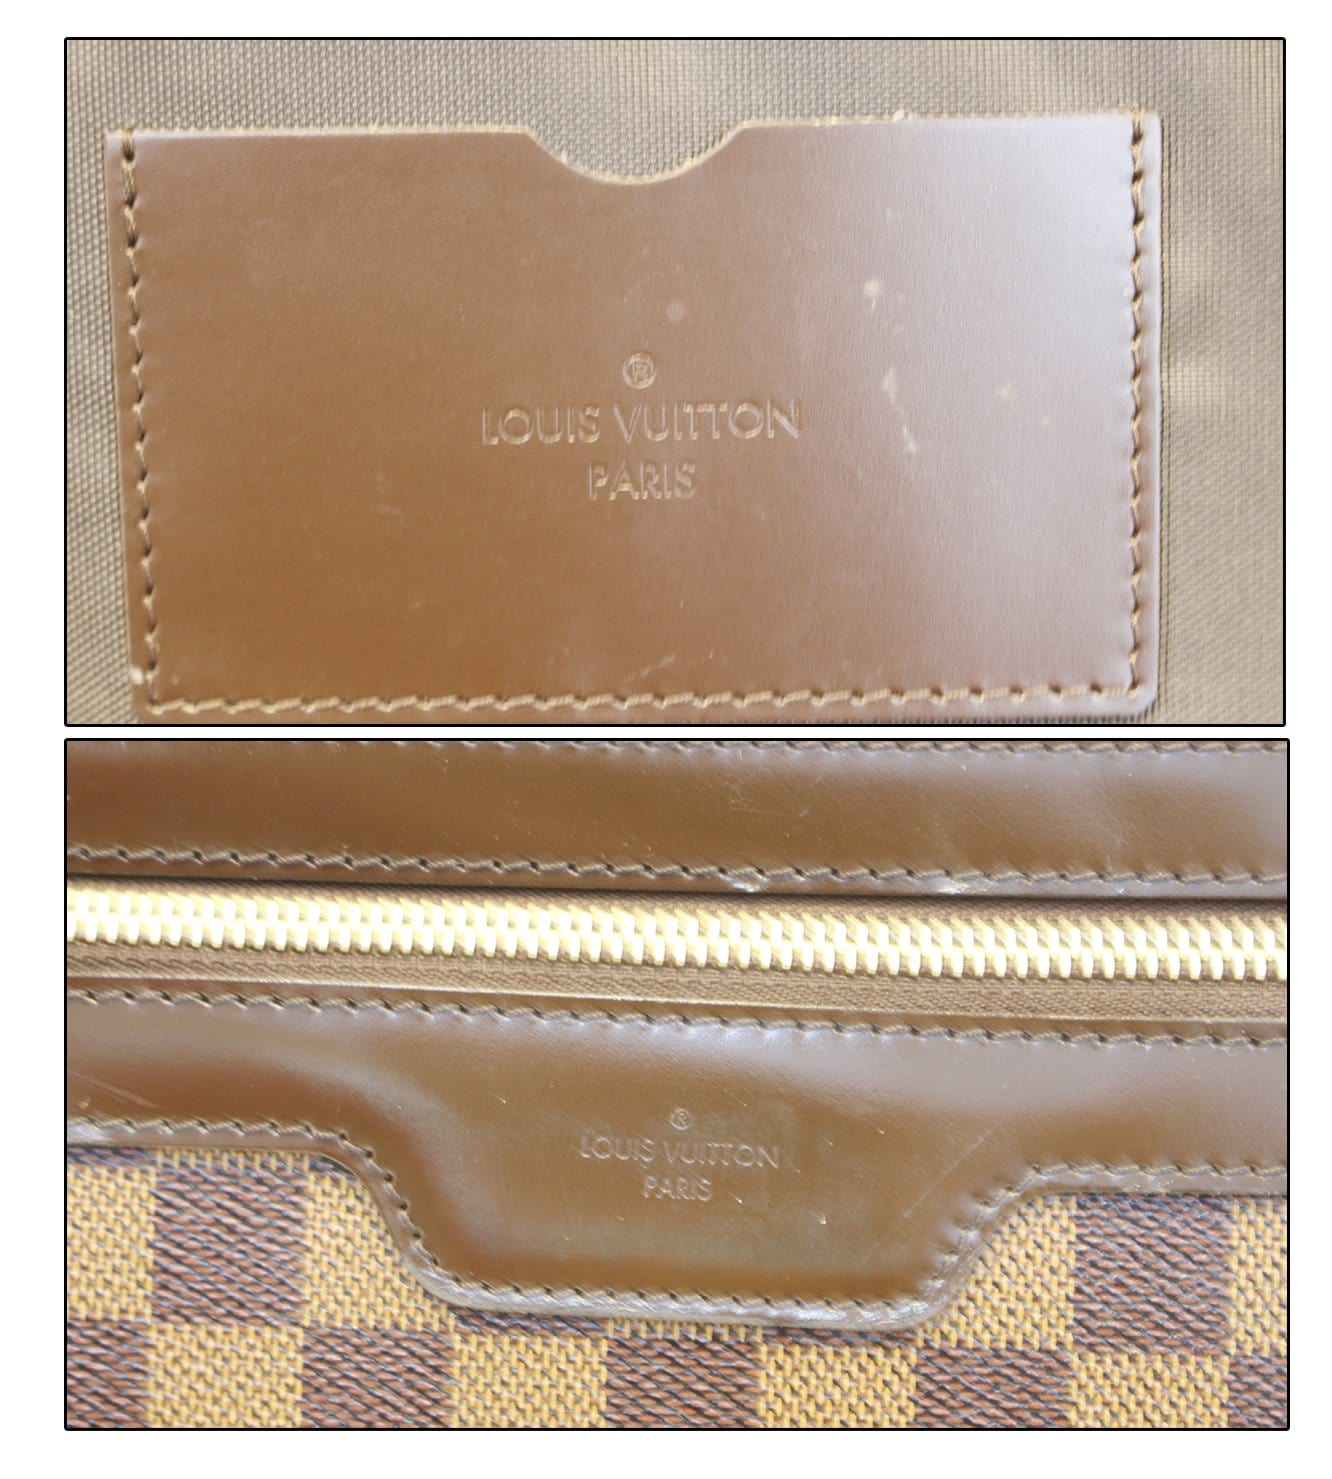 Louis Vuitton Damier Ebene Business Card Holder - A World Of Goods